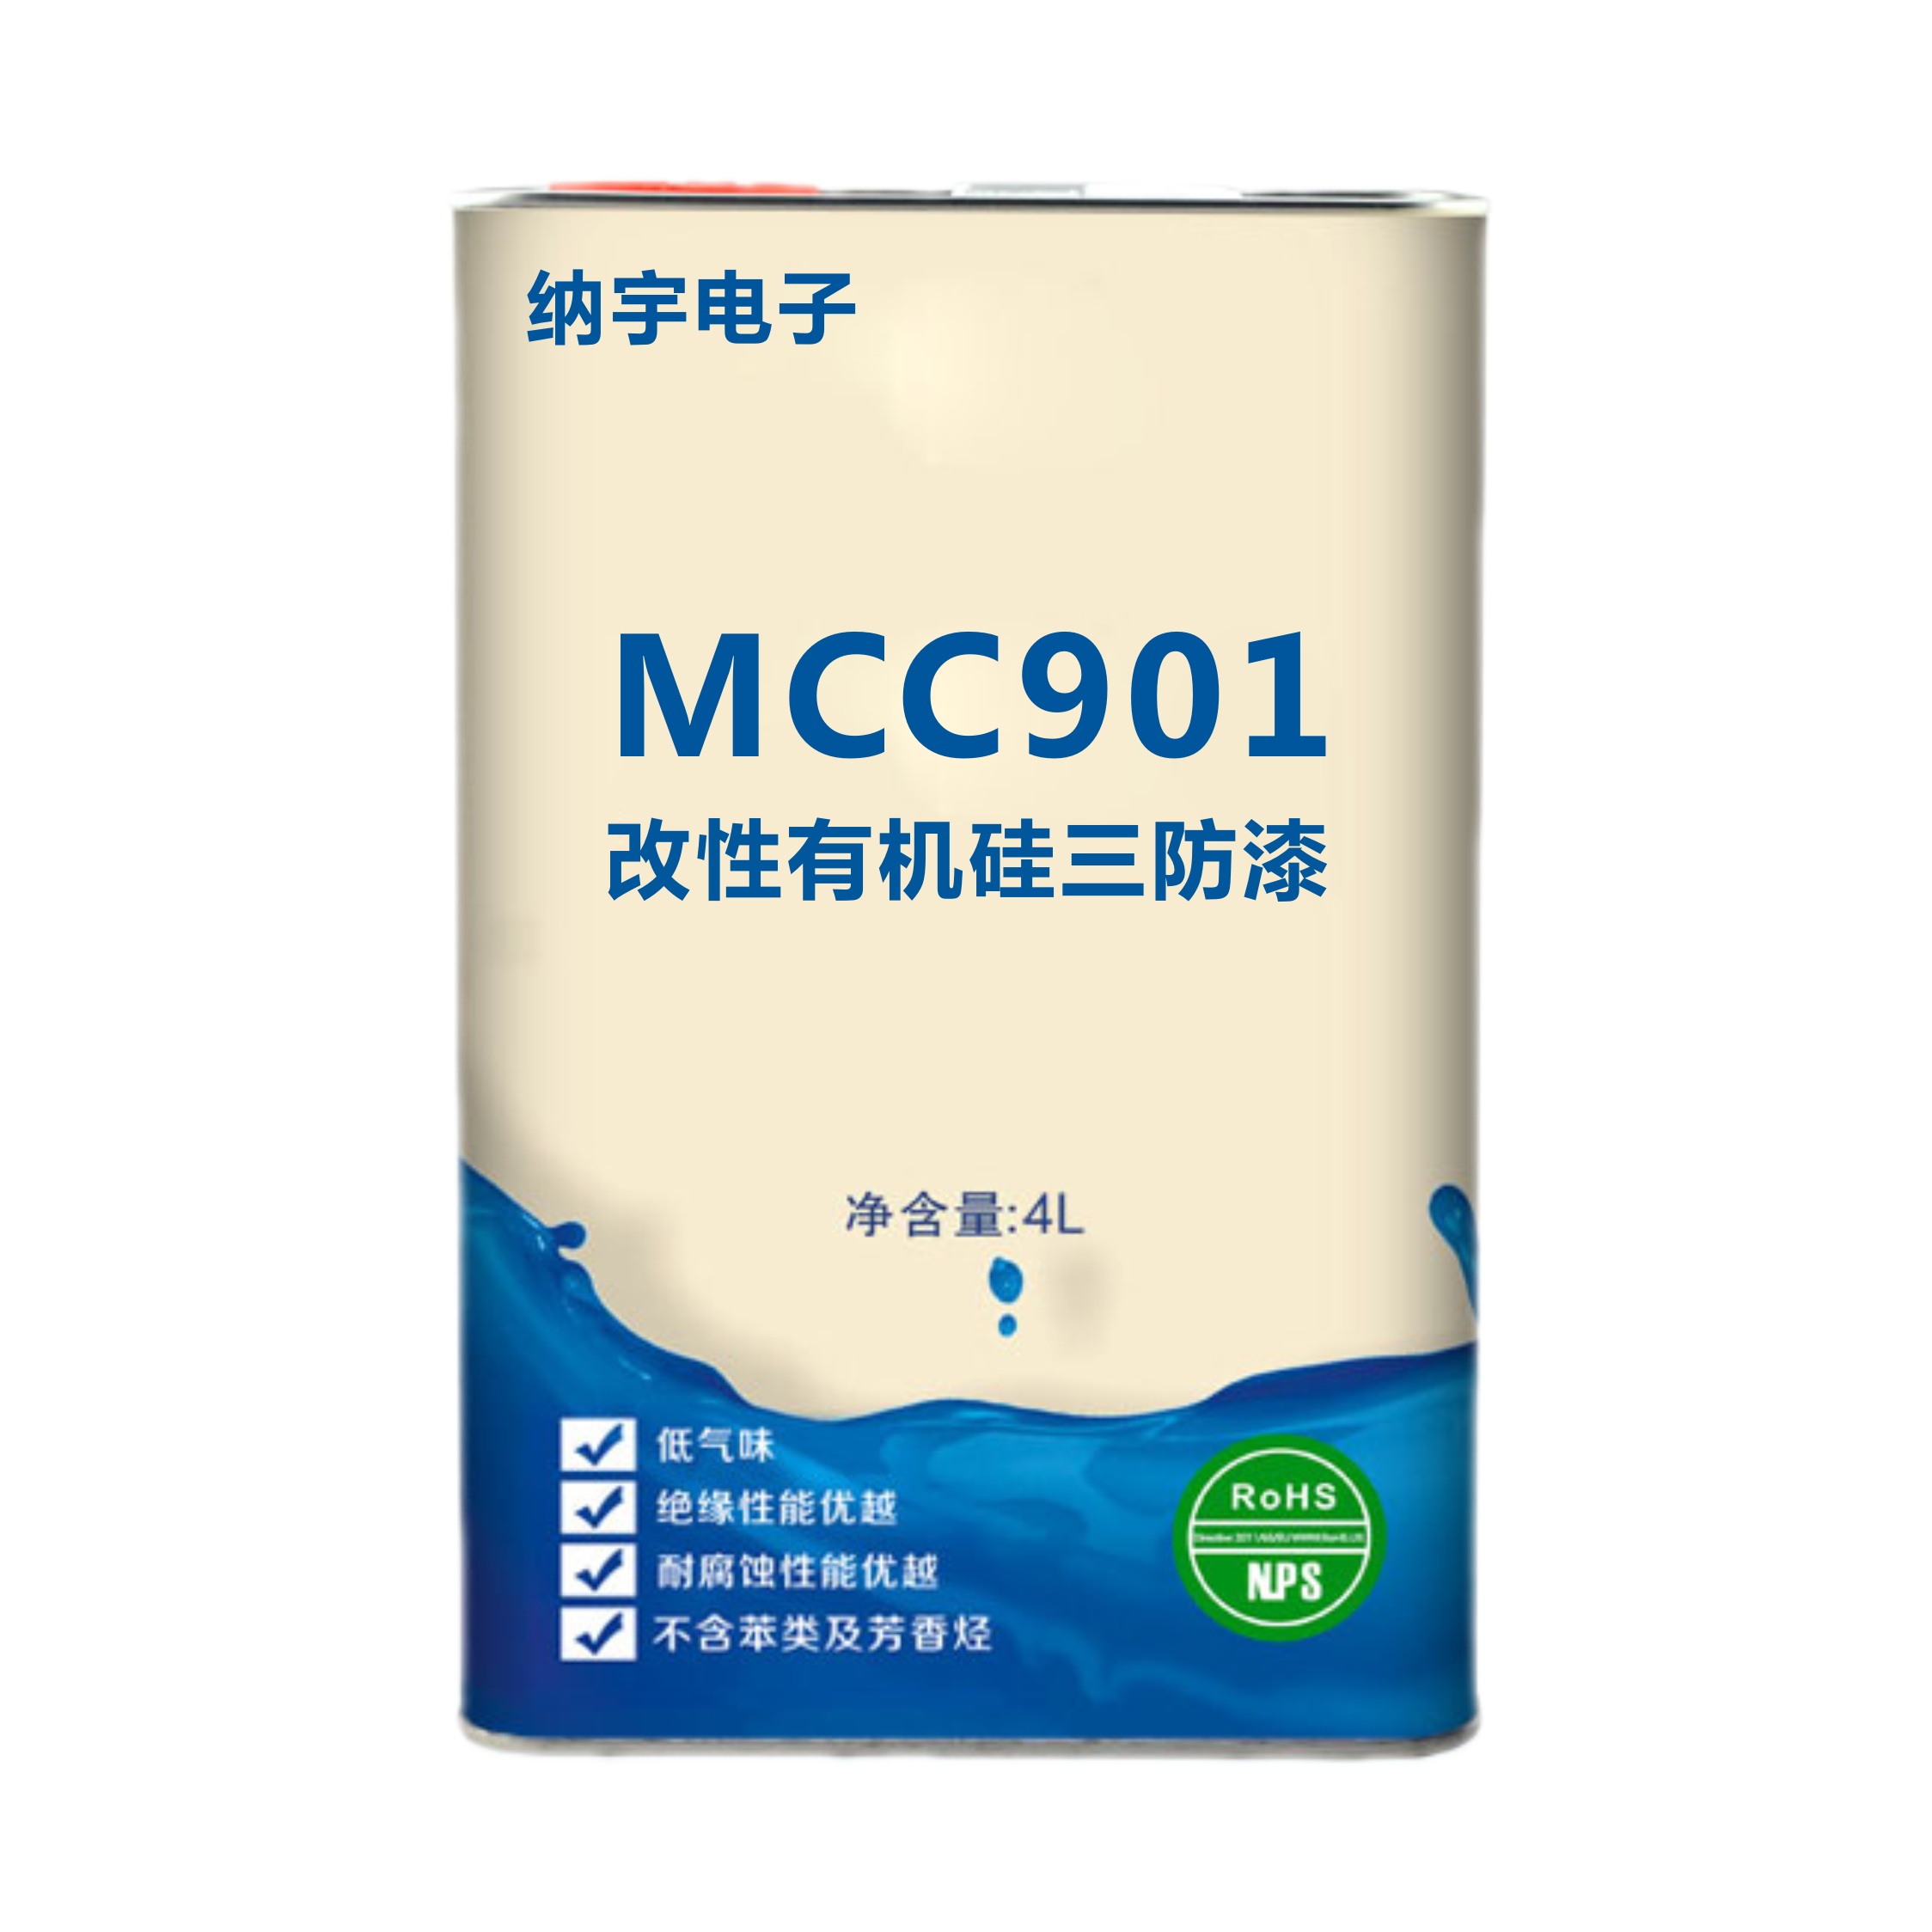 聚氨酯改性有机硅(MCC901)